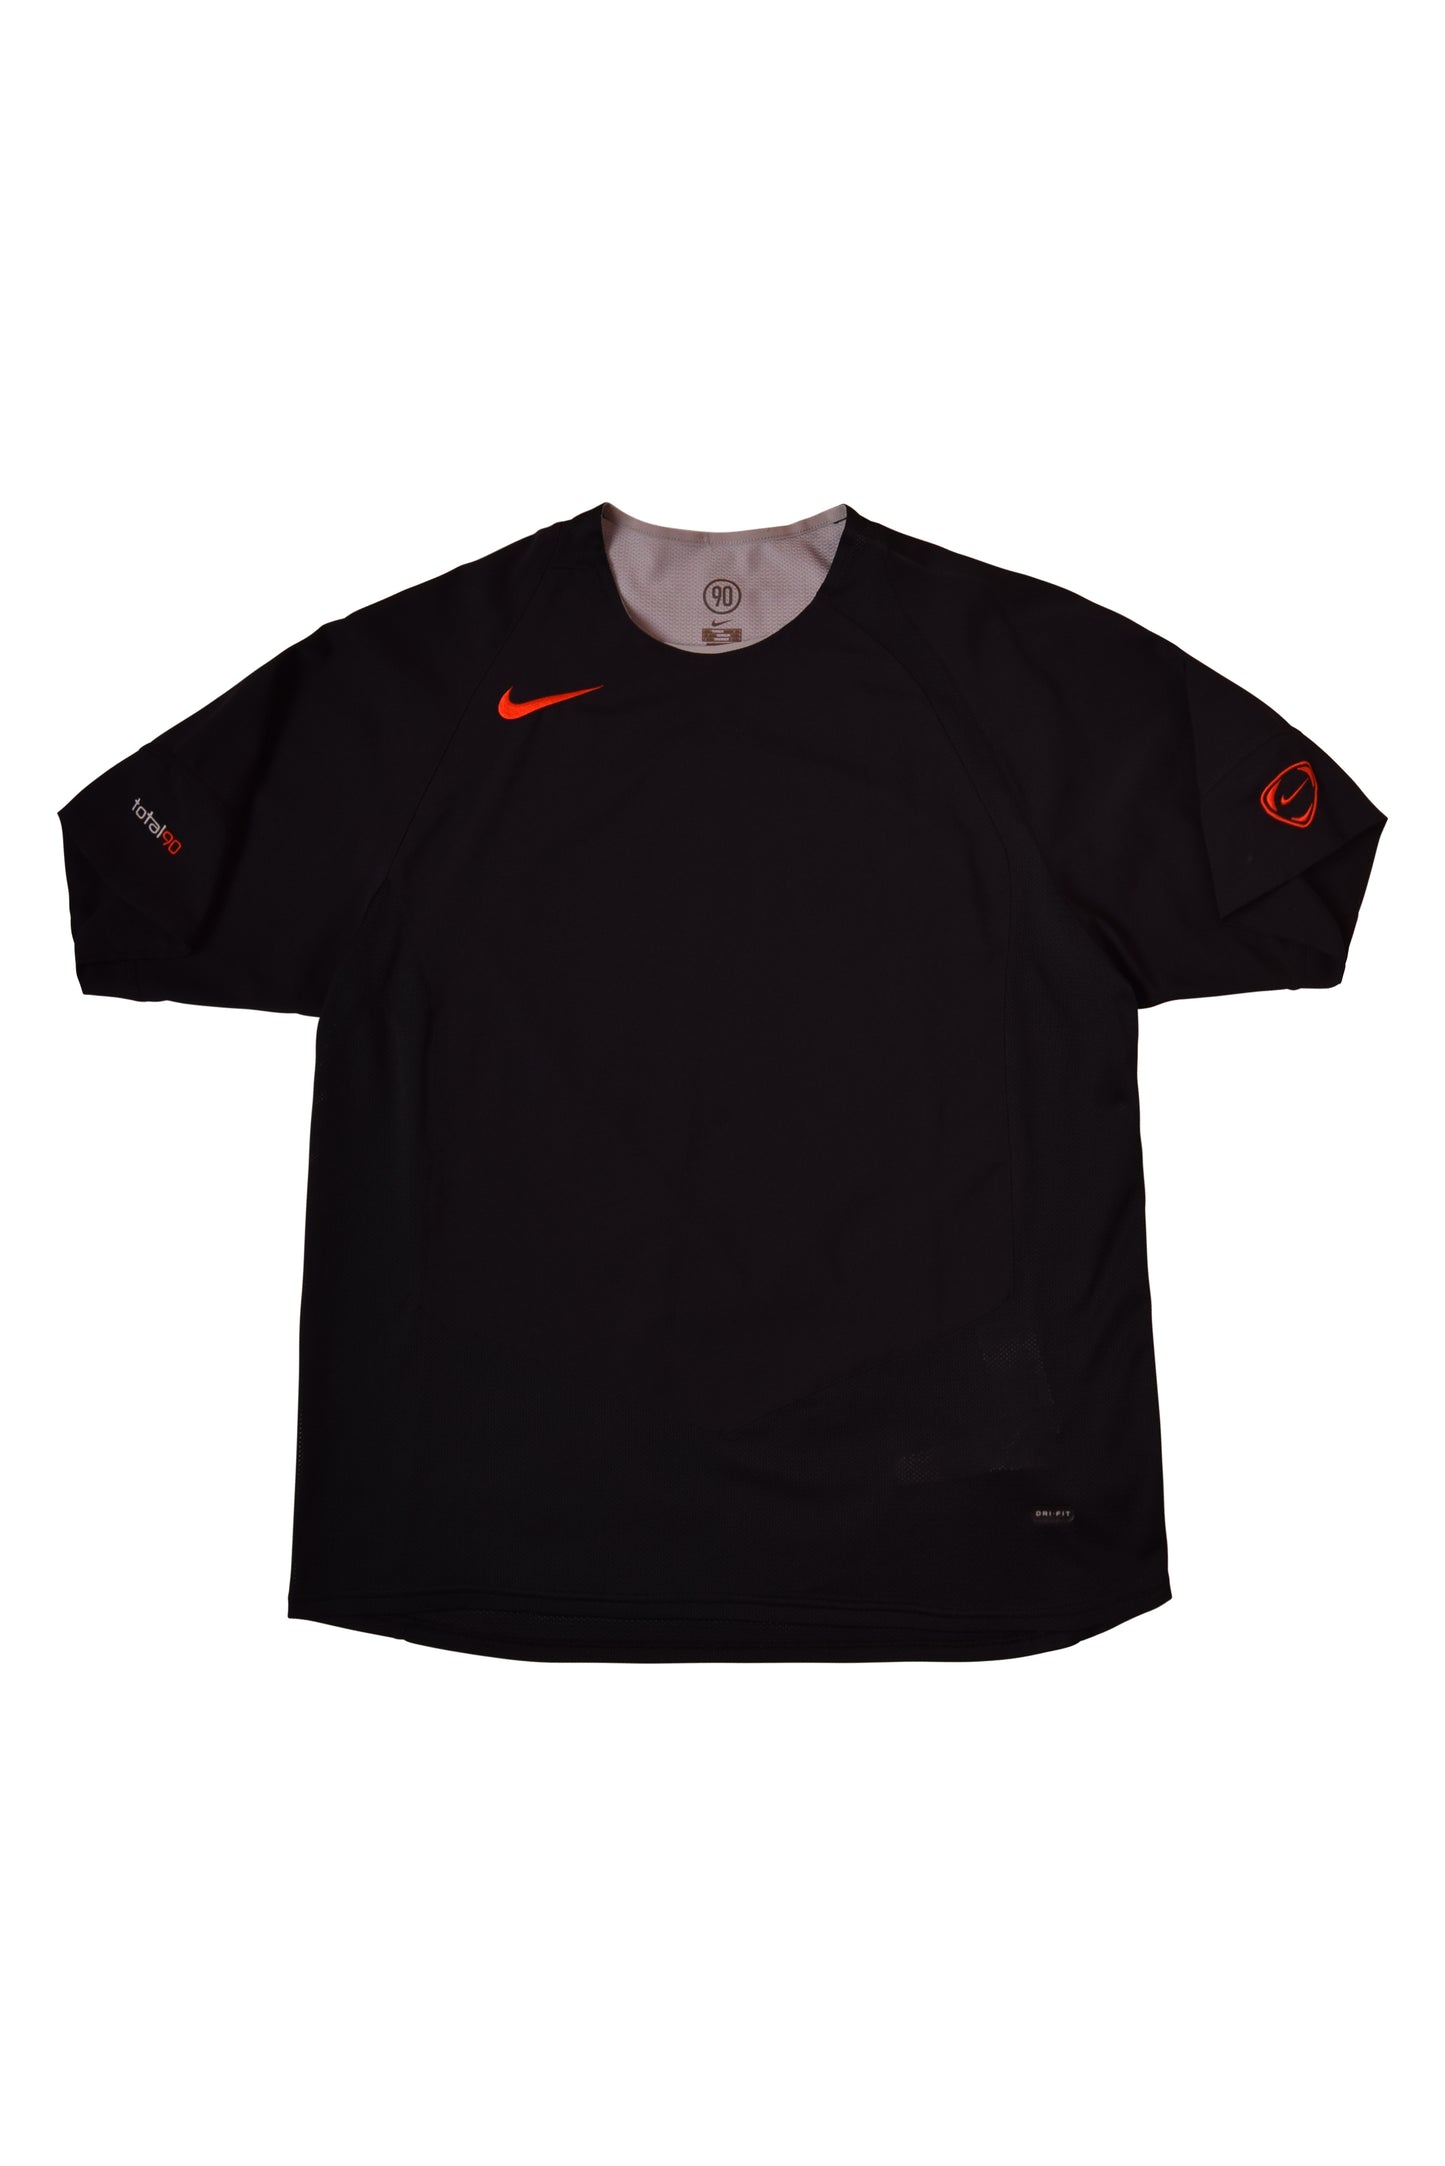 Nike Total 90 Football Training Jersey Size L '00s DRI-FIT